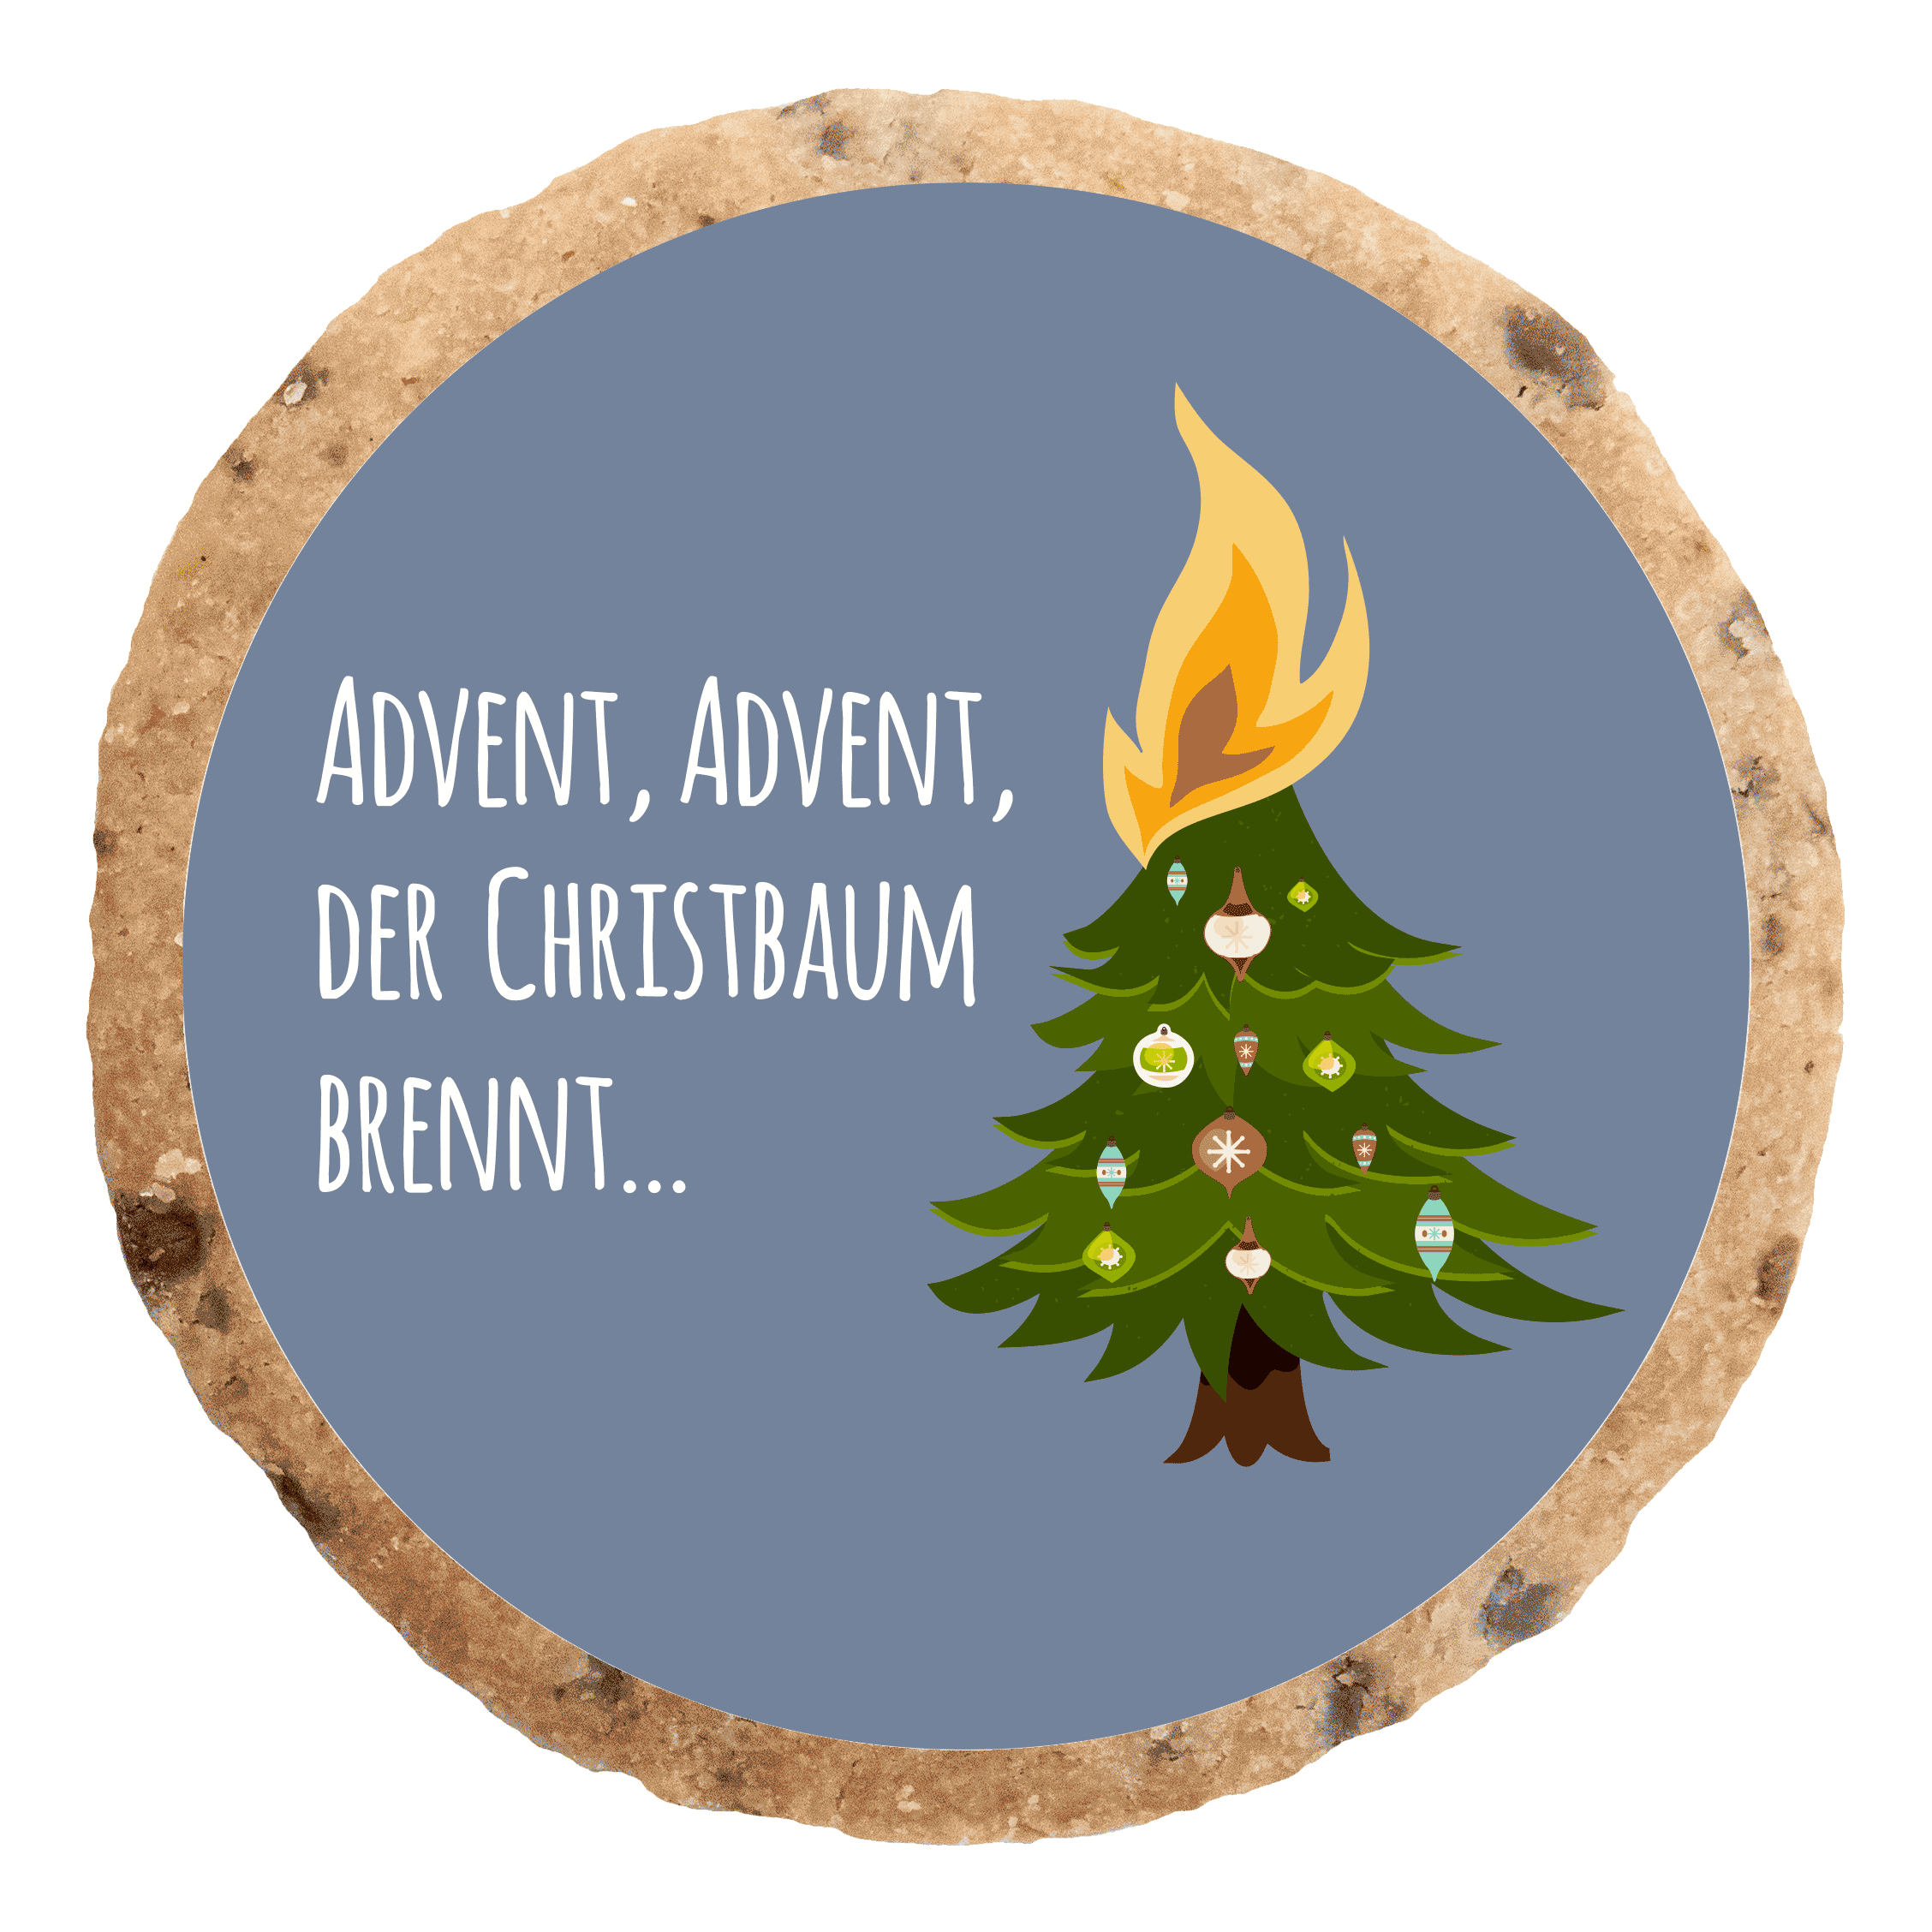 "Der Christbaum brennt" MotivKEKS